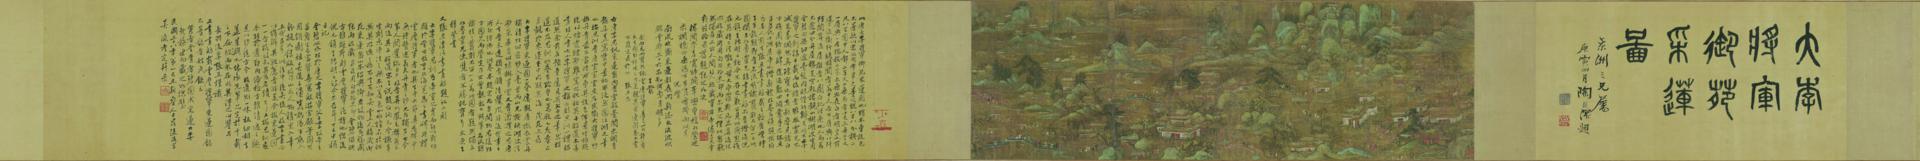 唐 宫苑图卷绢本23.9x77.2cm